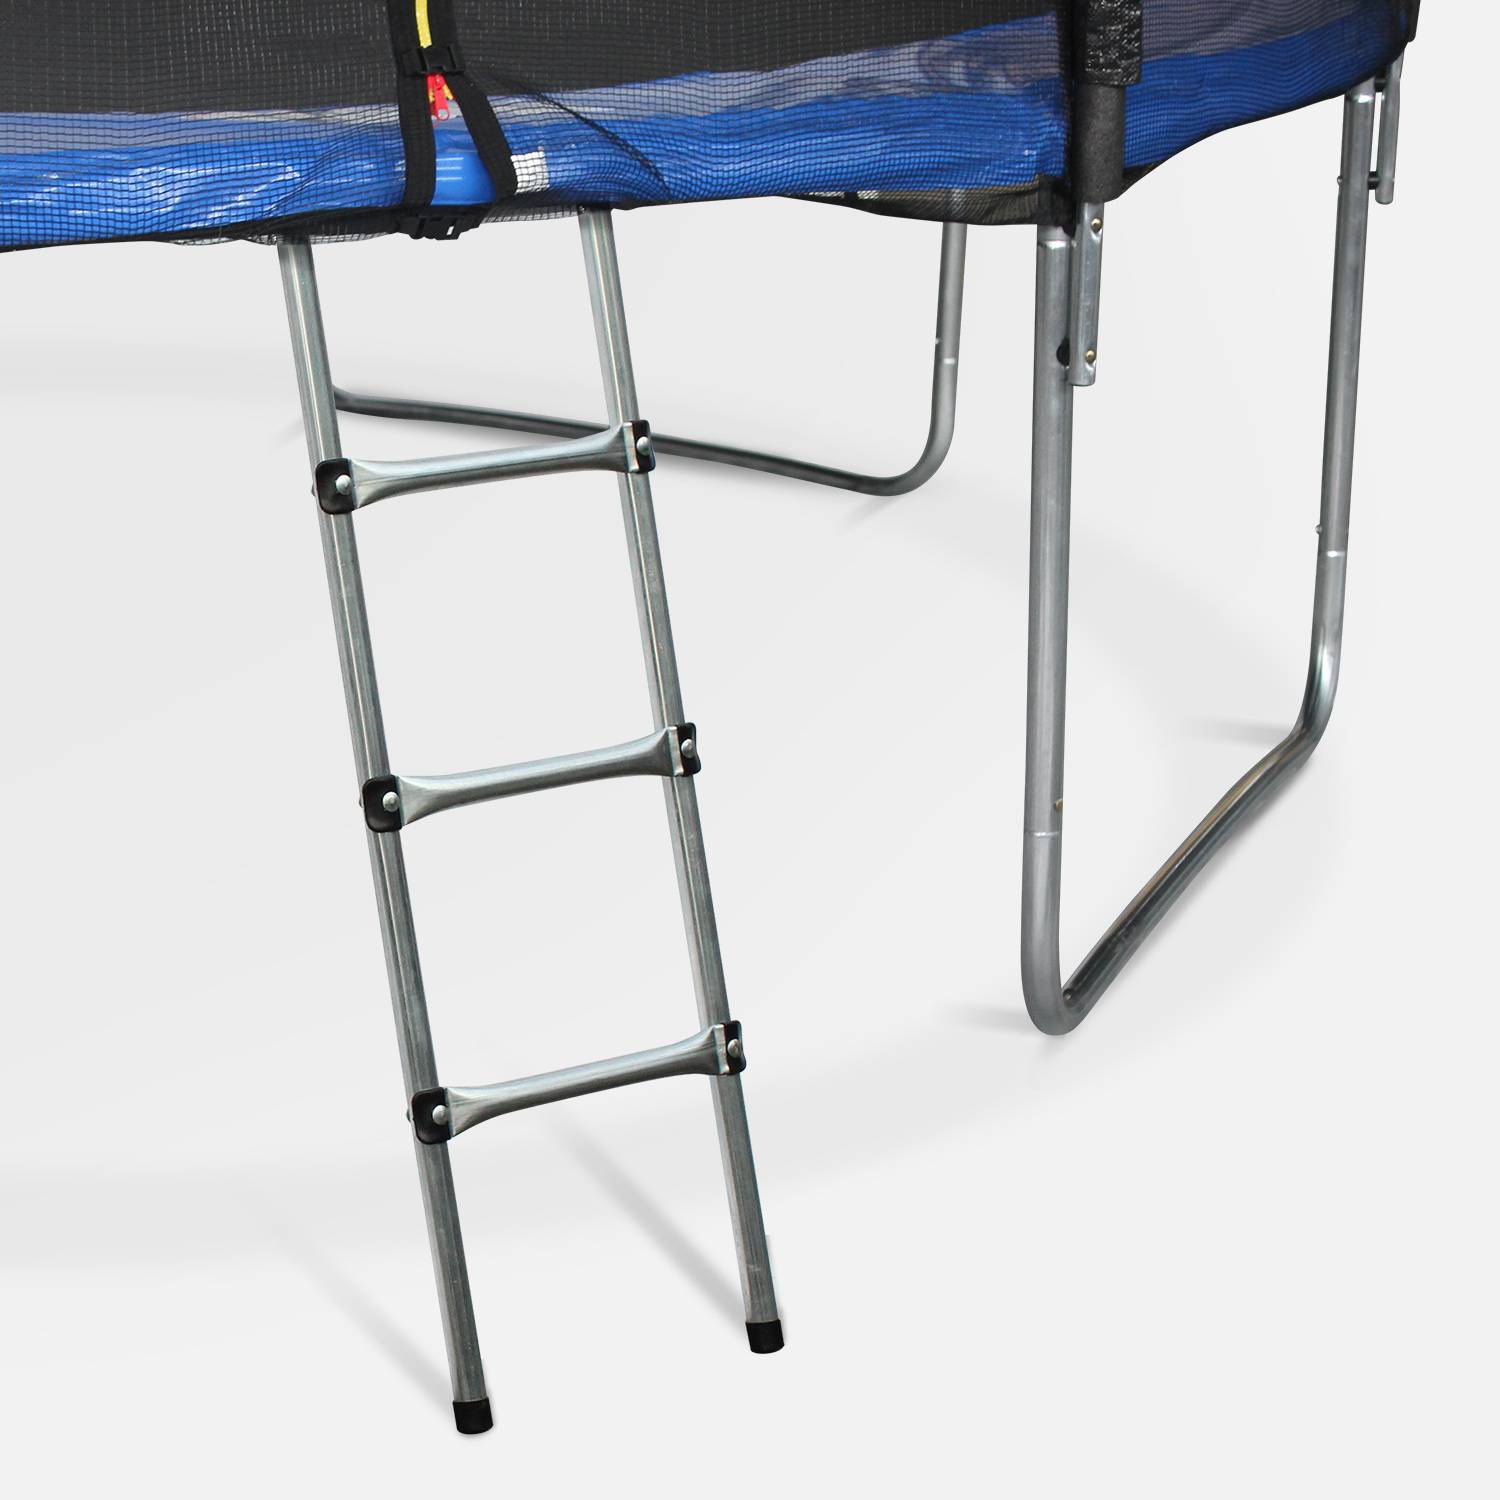 Pakket met accessoires voor trampoline Ø460cm Neptune met een ladder, een beschermhoes, een opbergnet voor schoenen en een verankeringskit Photo2